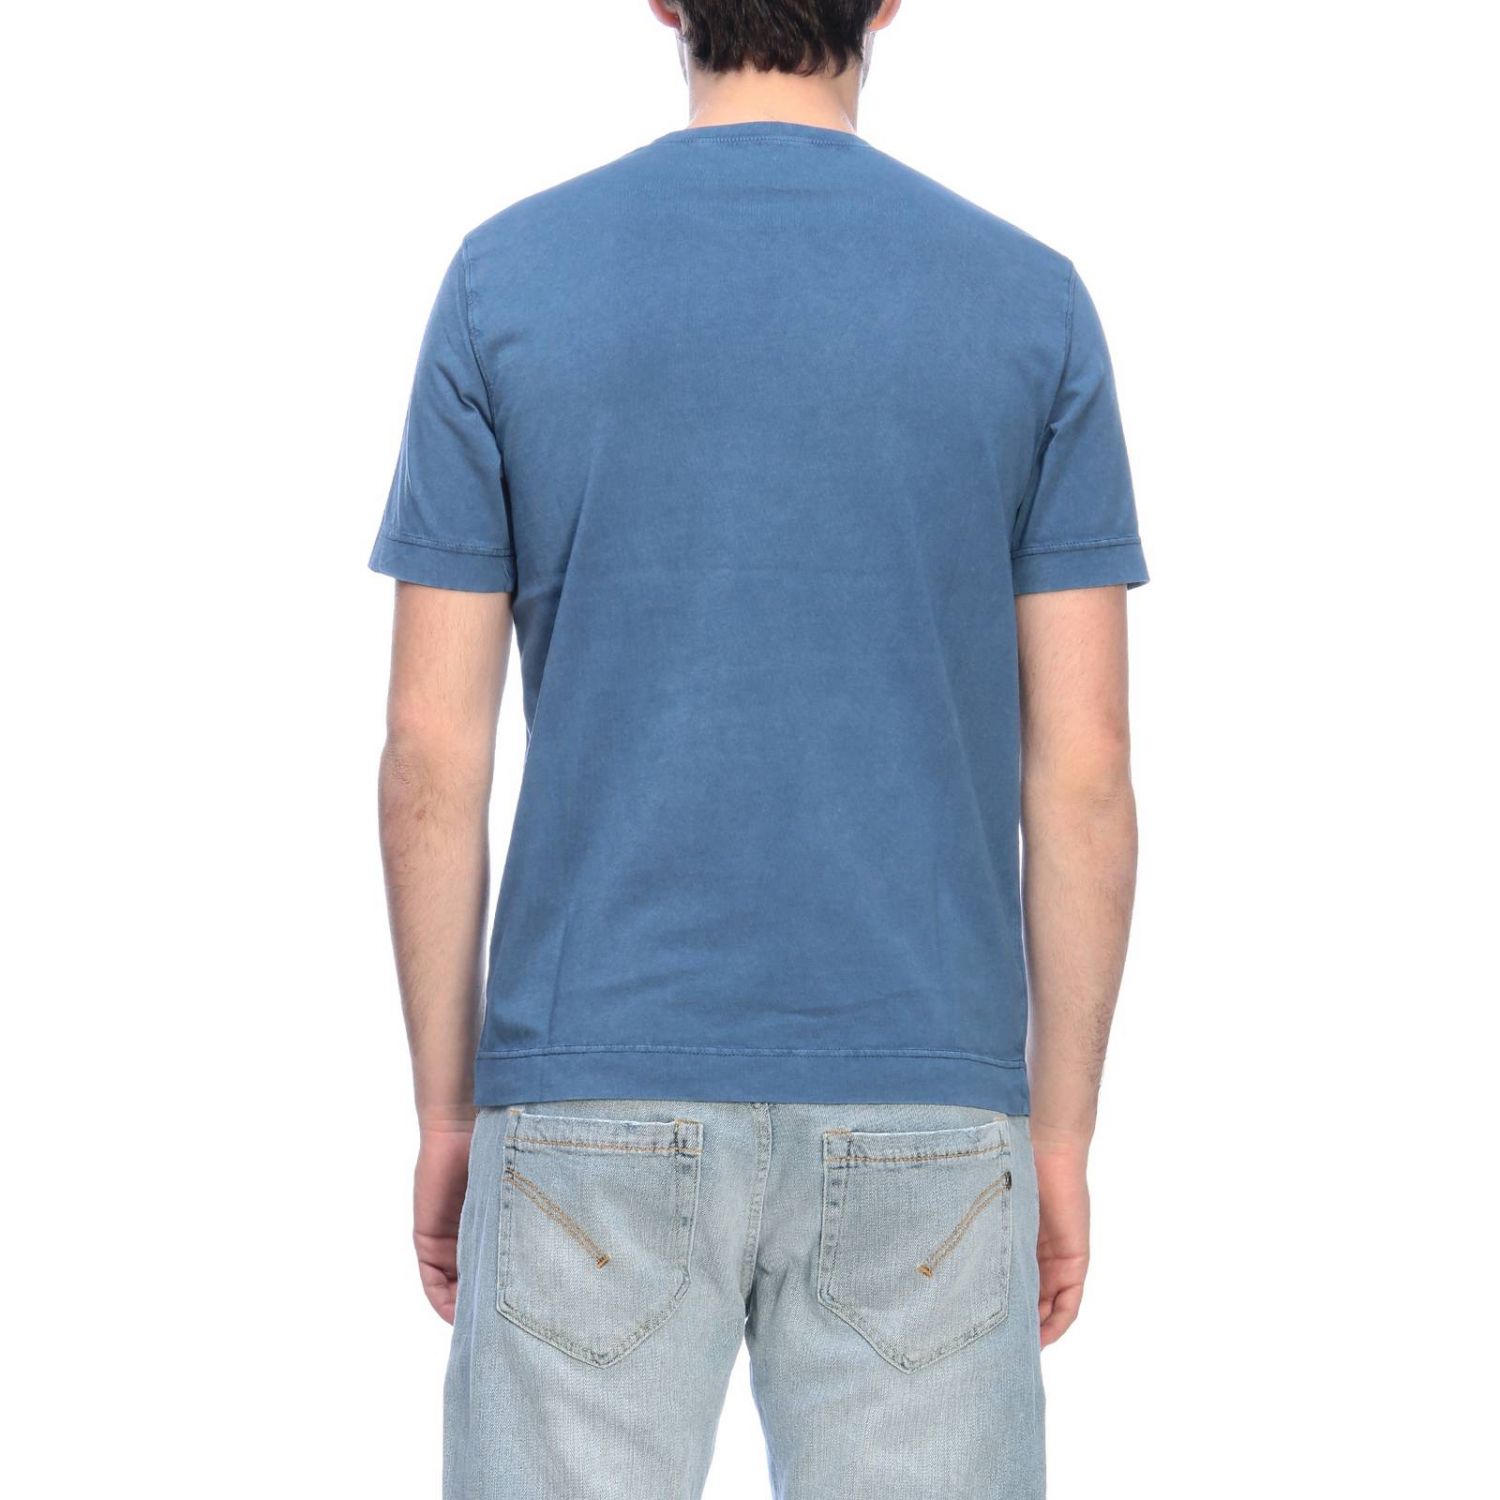 Circolo 1901 Outlet: t-shirt for men - Blue | Circolo 1901 t-shirt ...